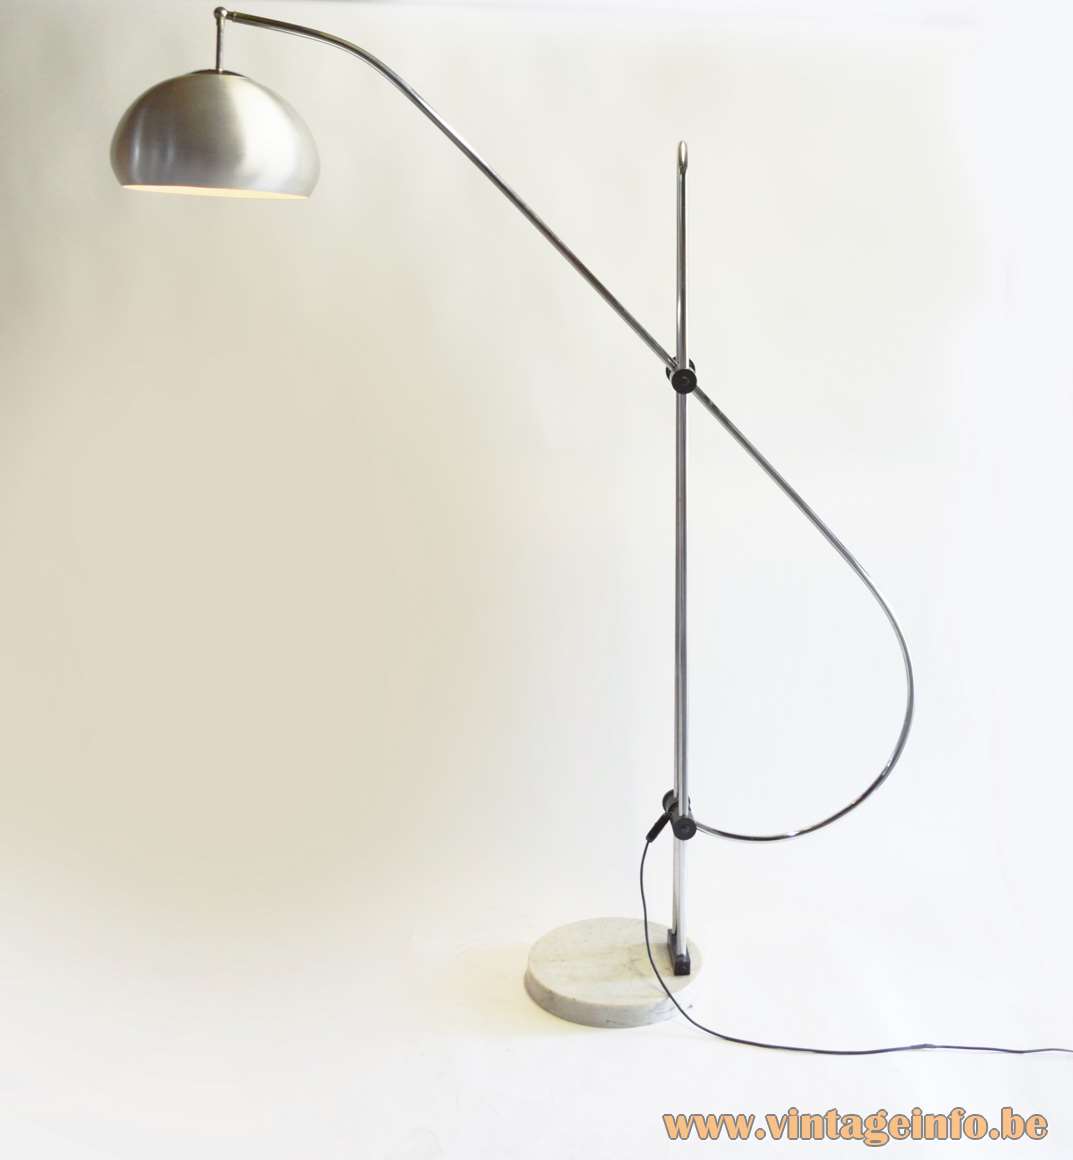 1960s articulating arc floor lamp round marble base chrome rods aluminium lampshade 1960s 1970s Boulanger Belgium